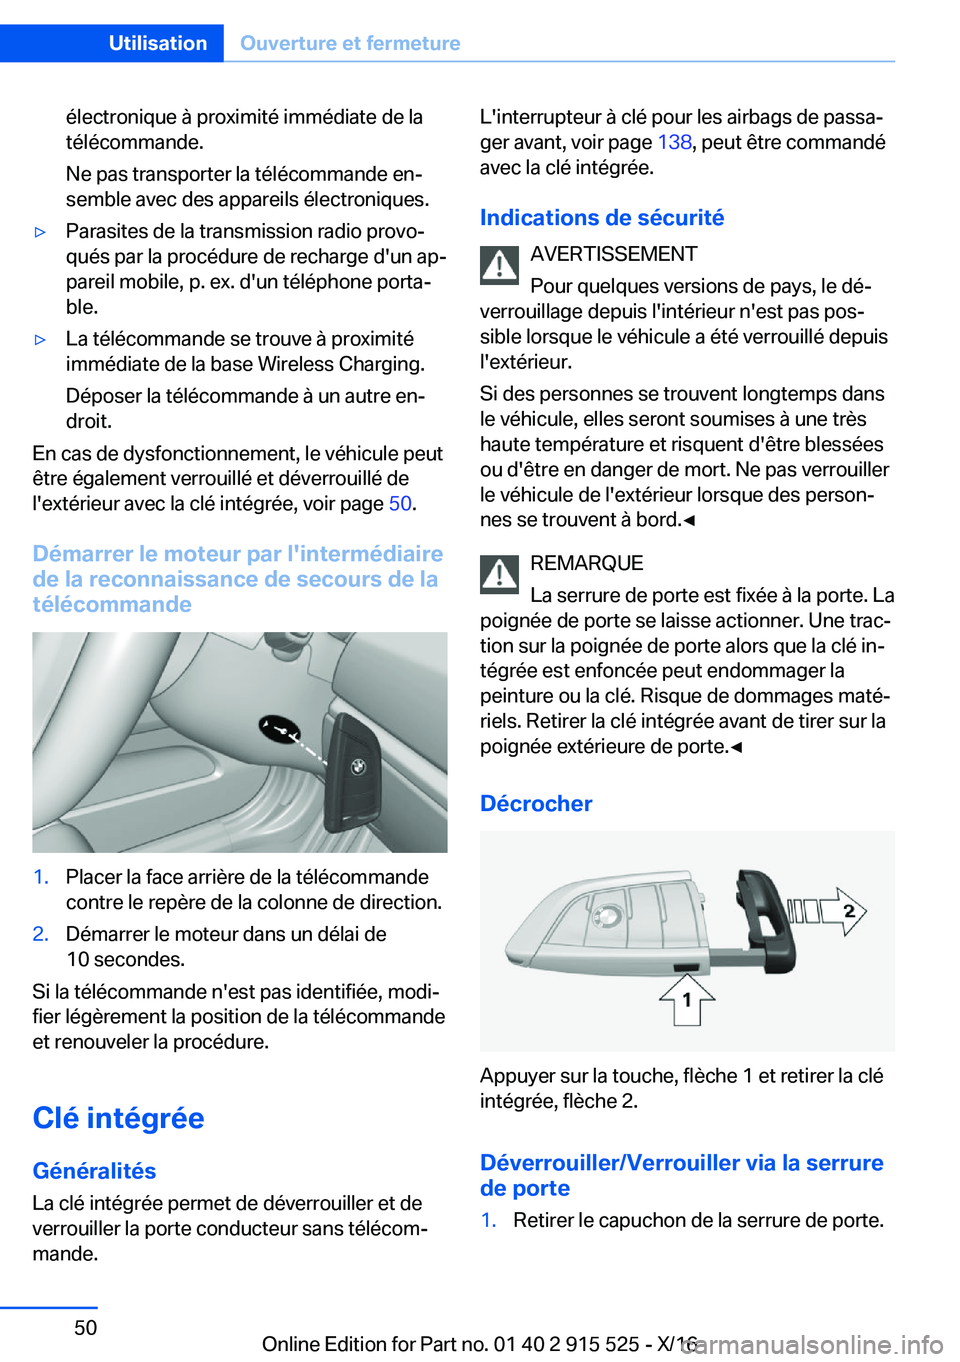 BMW X5 2017  Notices Demploi (in French) �é�l�e�c�t�r�o�n�i�q�u�e� �à� �p�r�o�x�i�m�i�t�é� �i�m�m�é�d�i�a�t�e� �d�e� �l�a
�t�é�l�é�c�o�m�m�a�n�d�e�.
�N�e� �p�a�s� �t�r�a�n�s�p�o�r�t�e�r� �l�a� �t�é�l�é�c�o�m�m�a�n�d�e� �e�nj
�s�e�m�